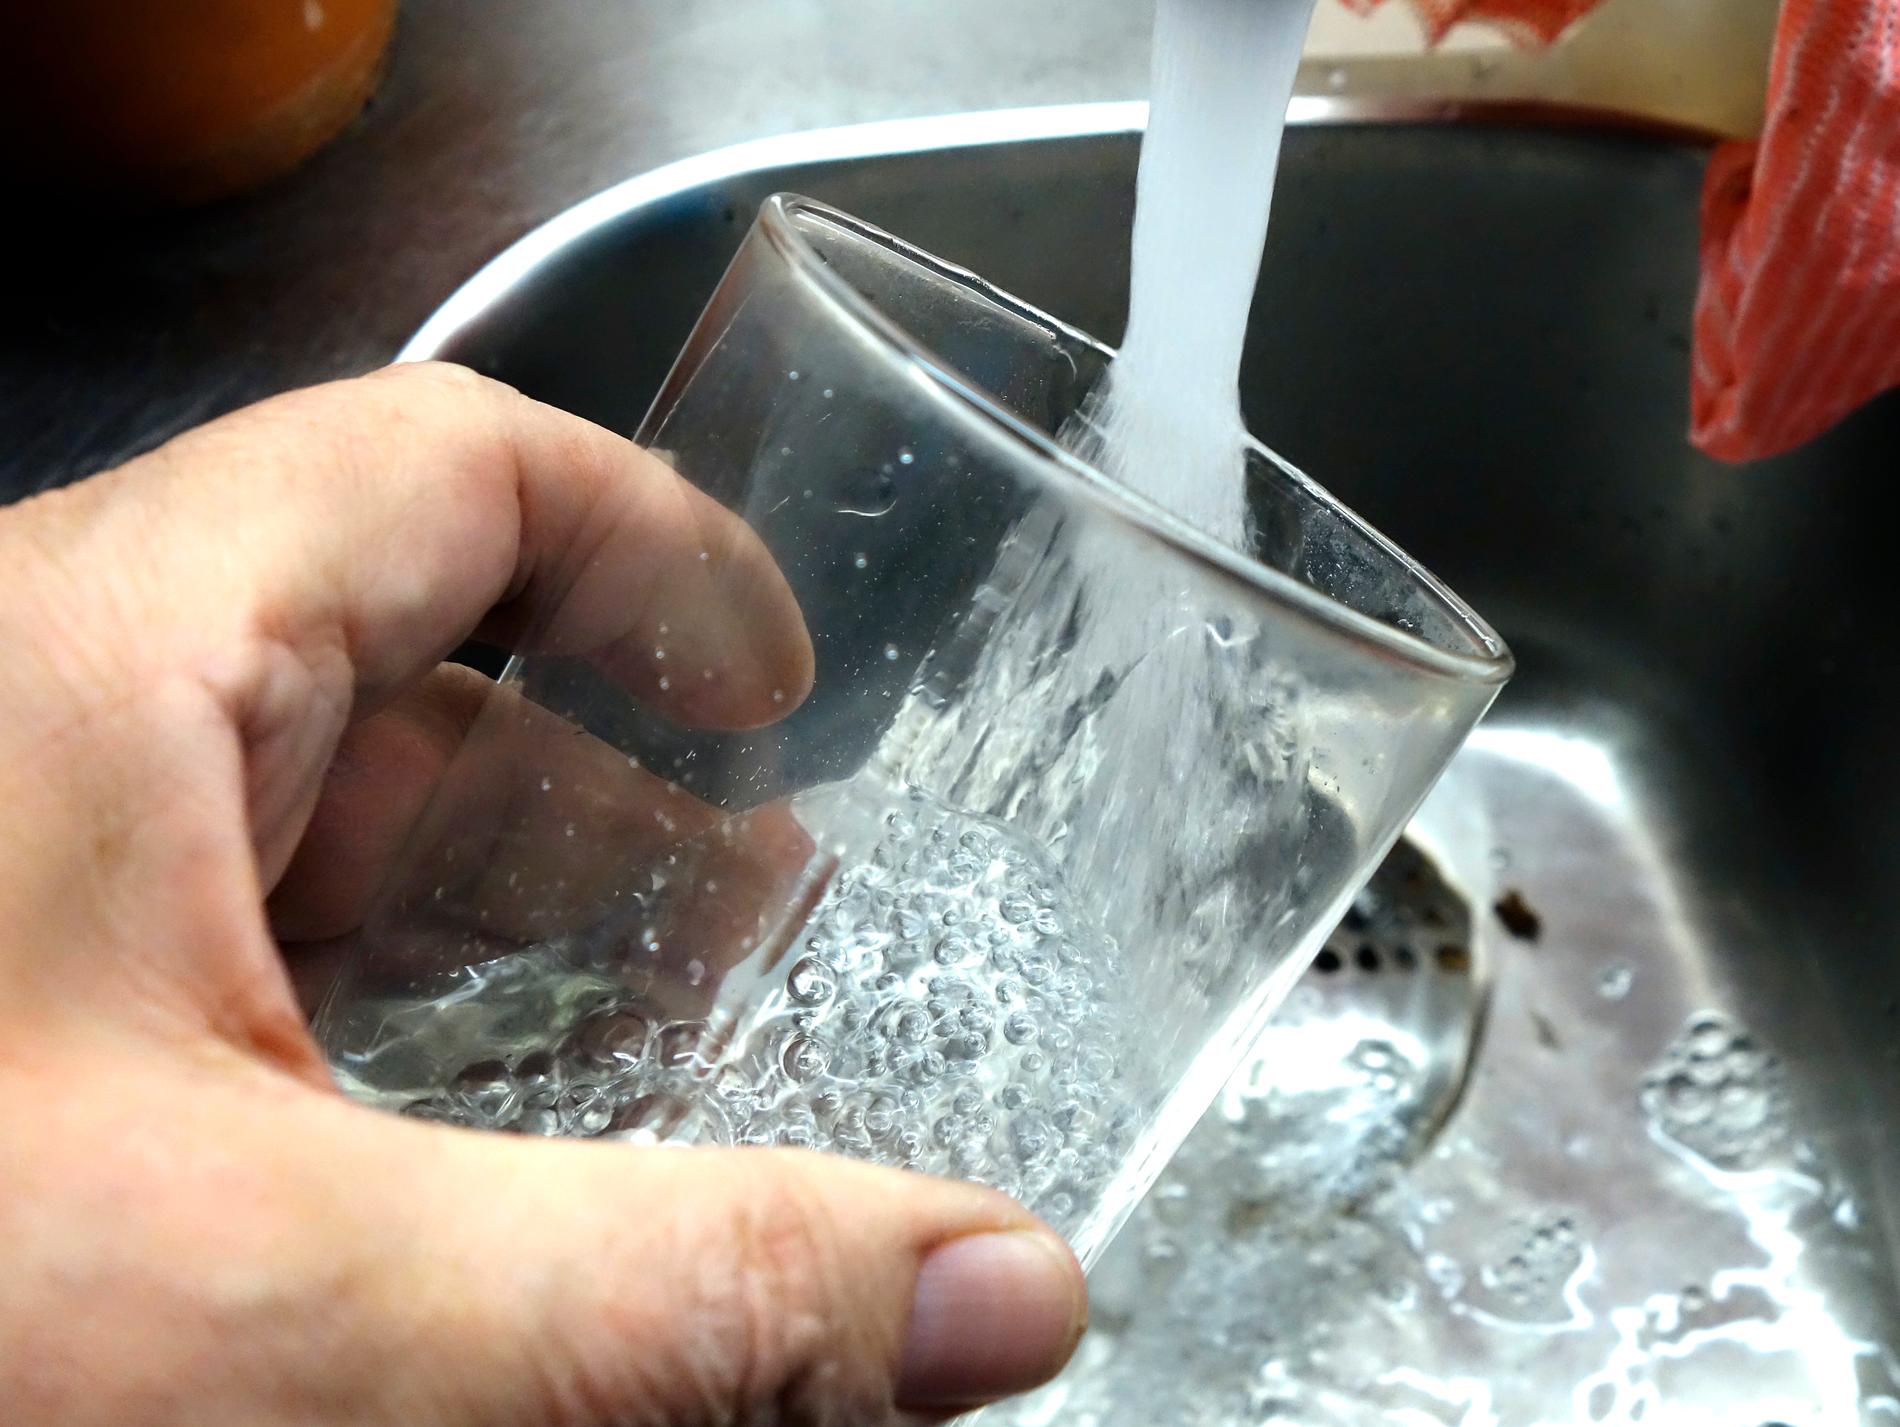 Tusentals hushåll uppmanas koka dricksvatten från Kumla vattenverk sedan ett prov visat spår av bakterier. Arkivbild.